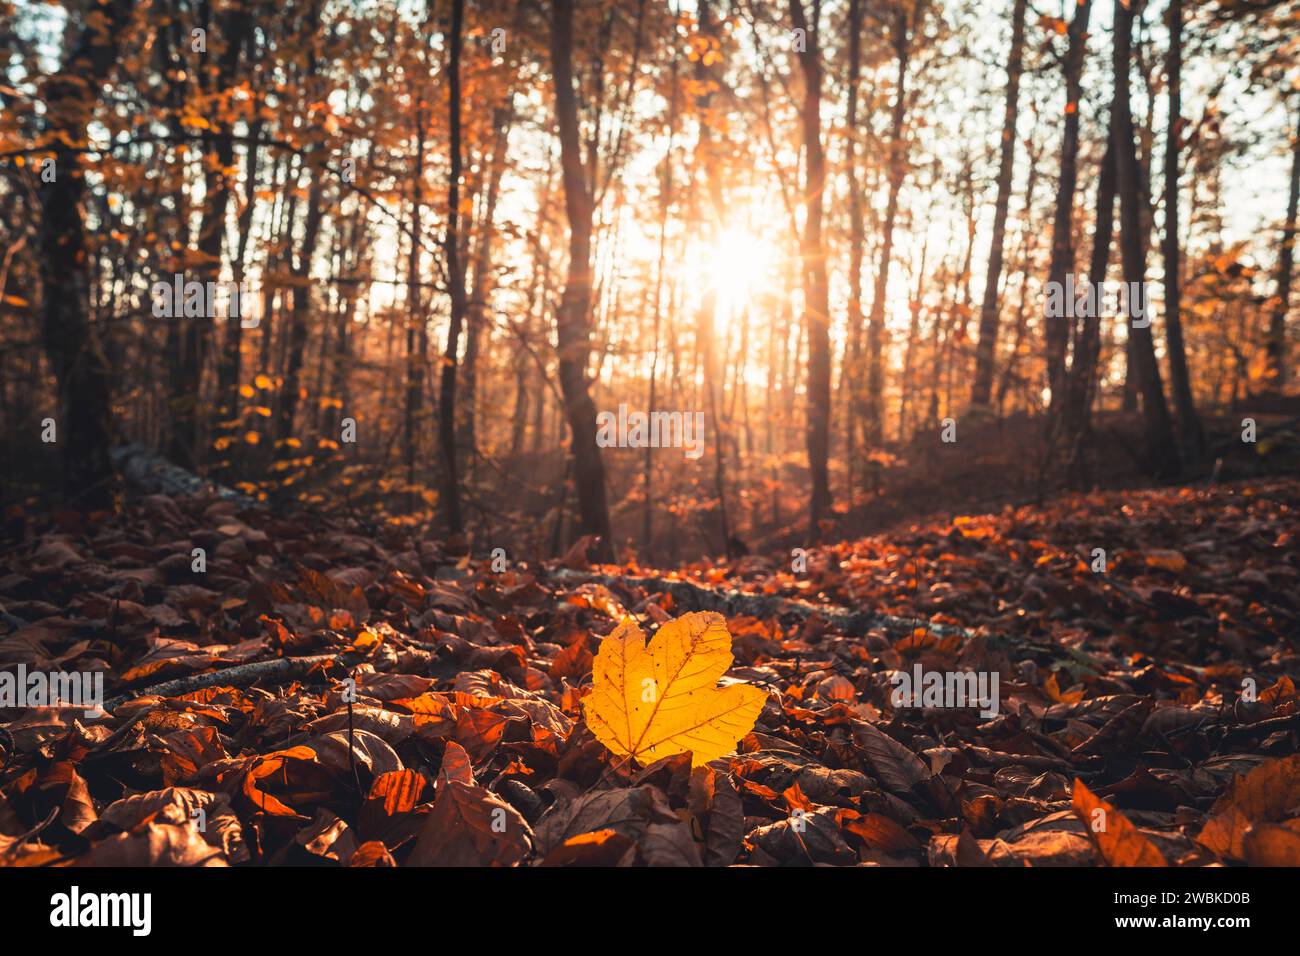 Feuillage d'automne dans l'Habichtswald près de Kassel, perspective près du sol, feuillage coloré sur le sol de la forêt, une seule feuille d'érable au premier plan, arrière-plan légèrement flou Banque D'Images